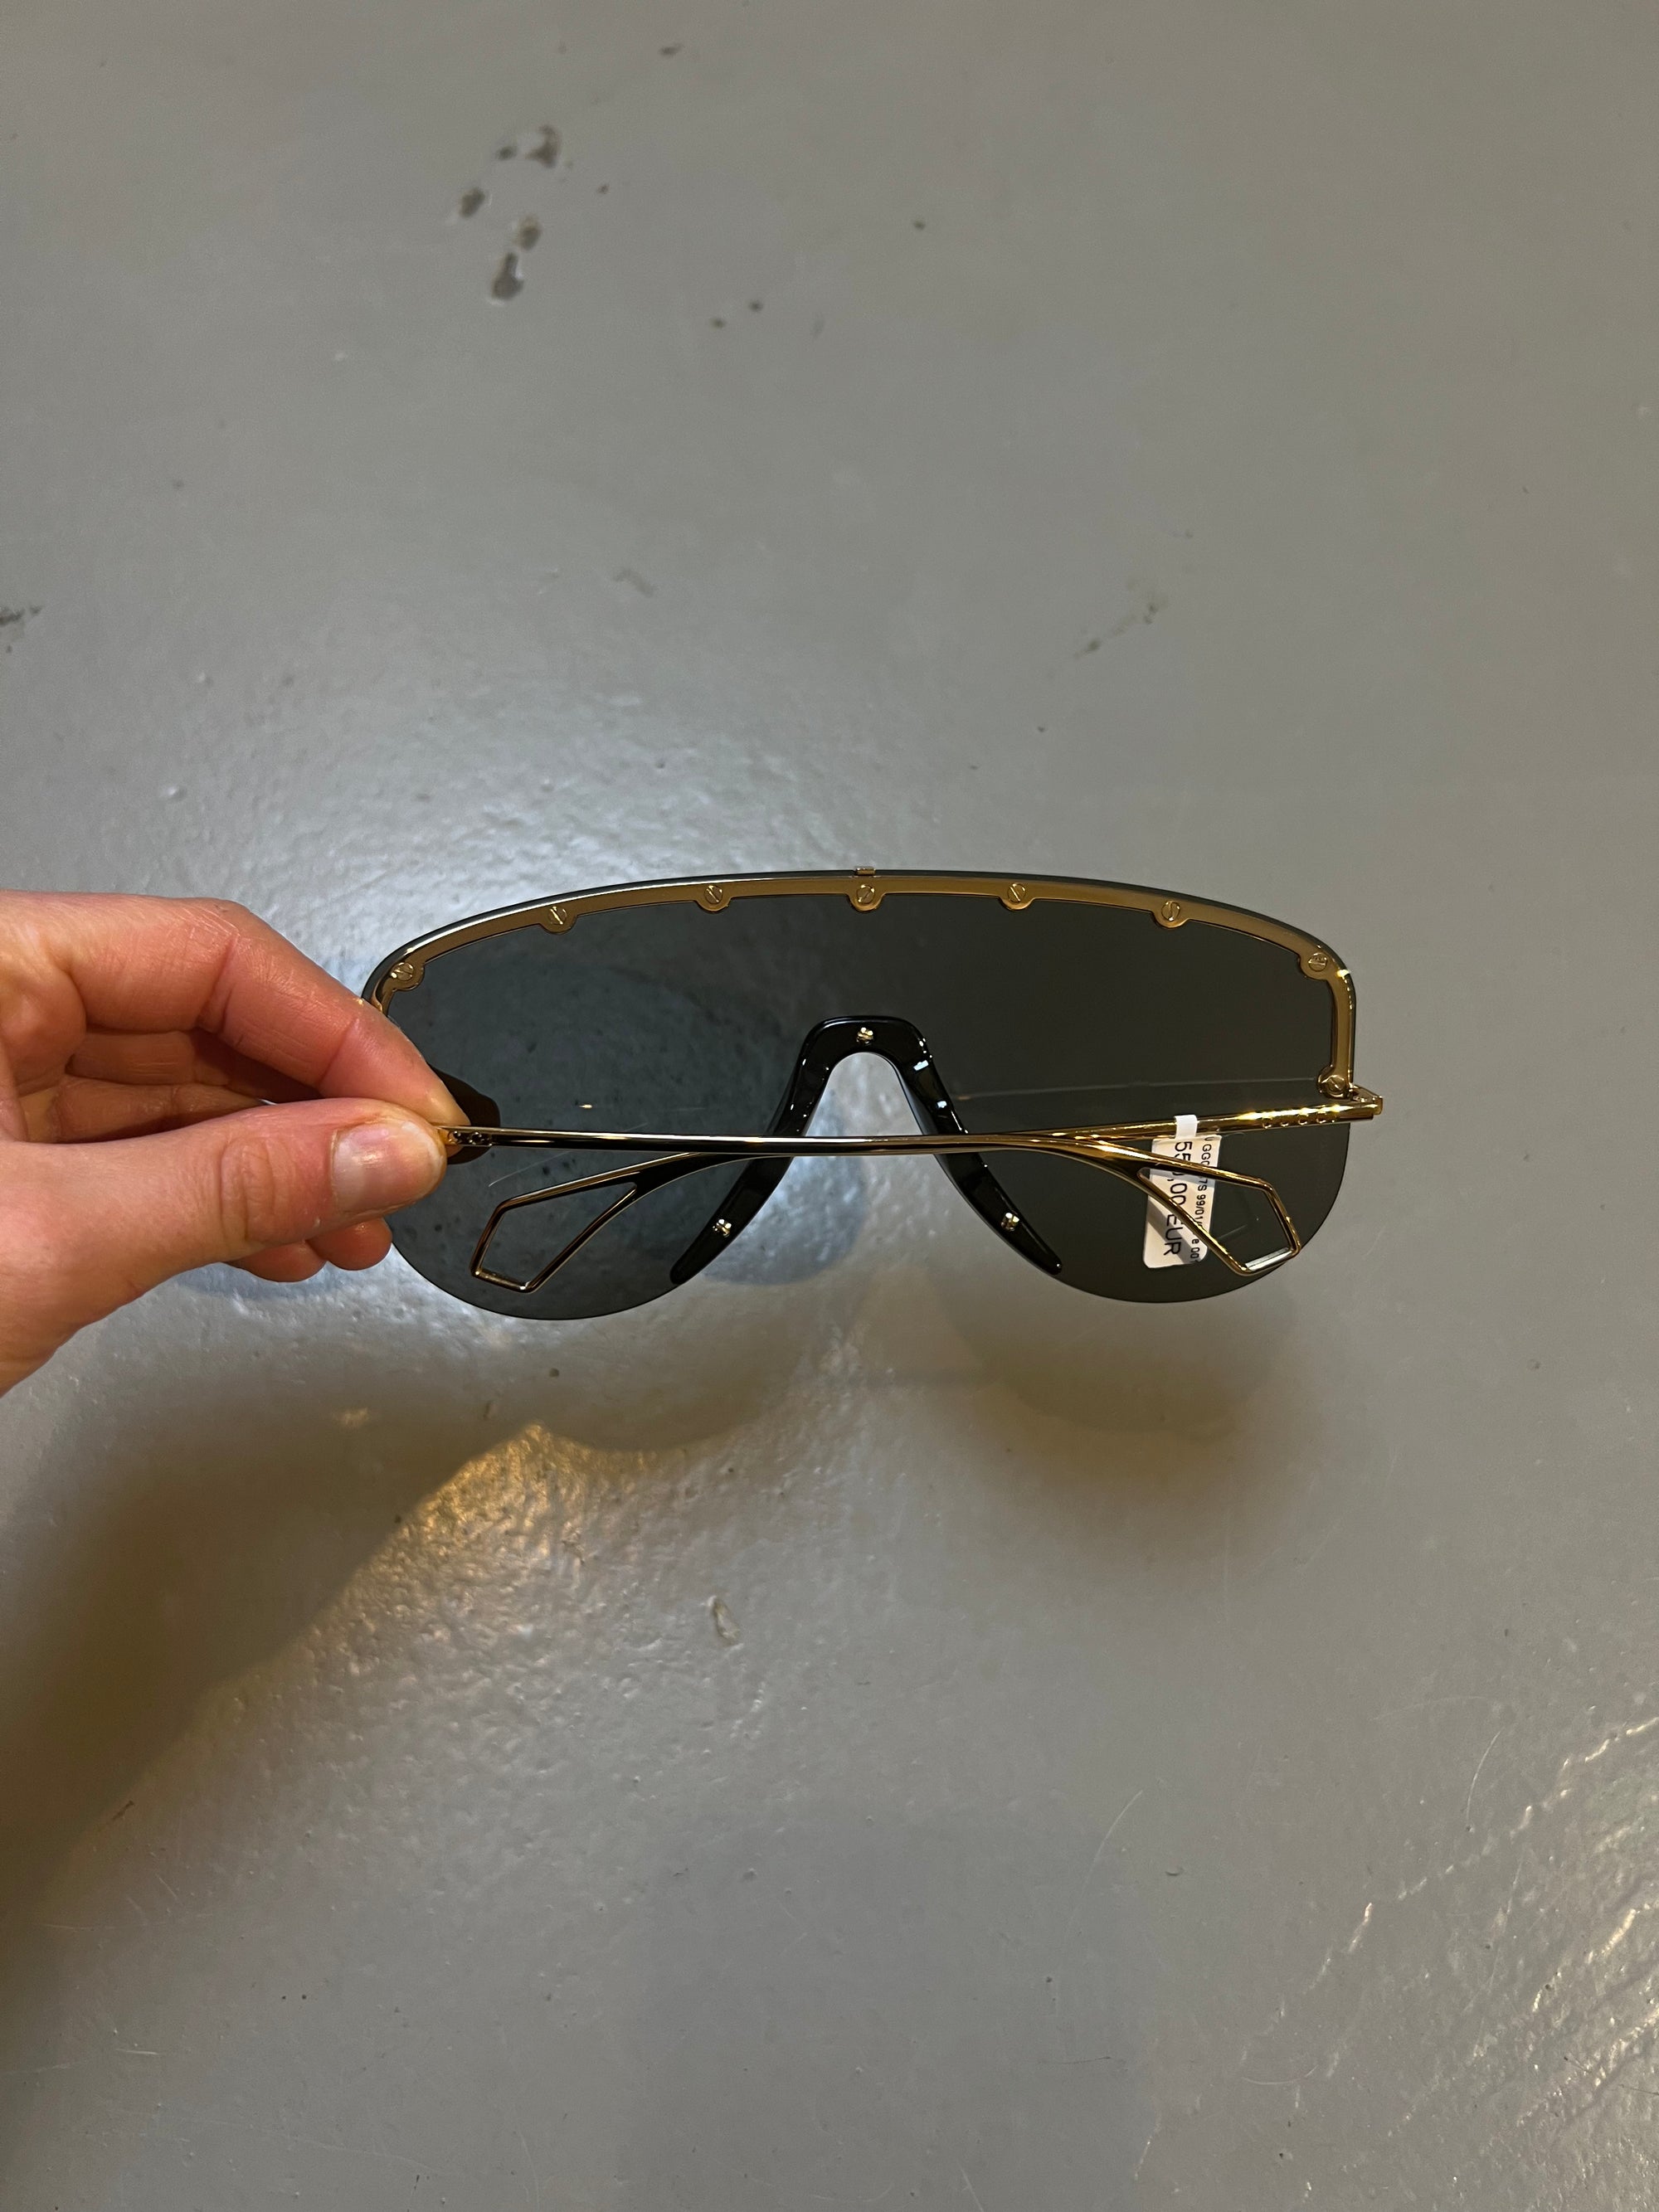 Produktbild von Gucci Sunglasses Big von hinten